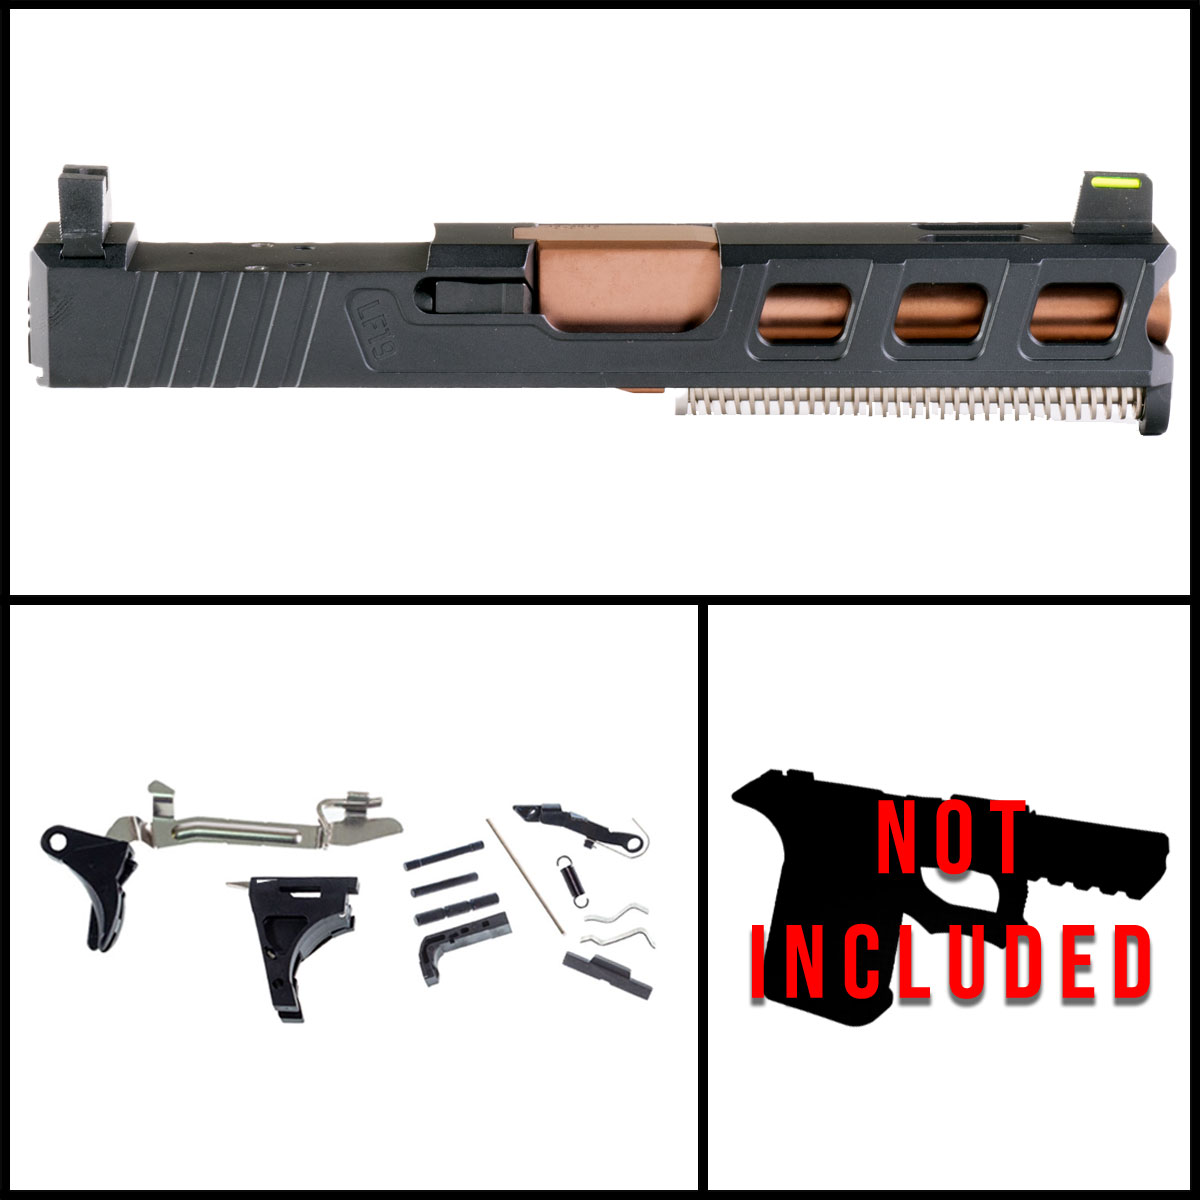 DTT 'Platinaire' 9mm Full Pistol Build Kit (Everything Minus Frame) - Glock 19 Gen 1-3 Compatible